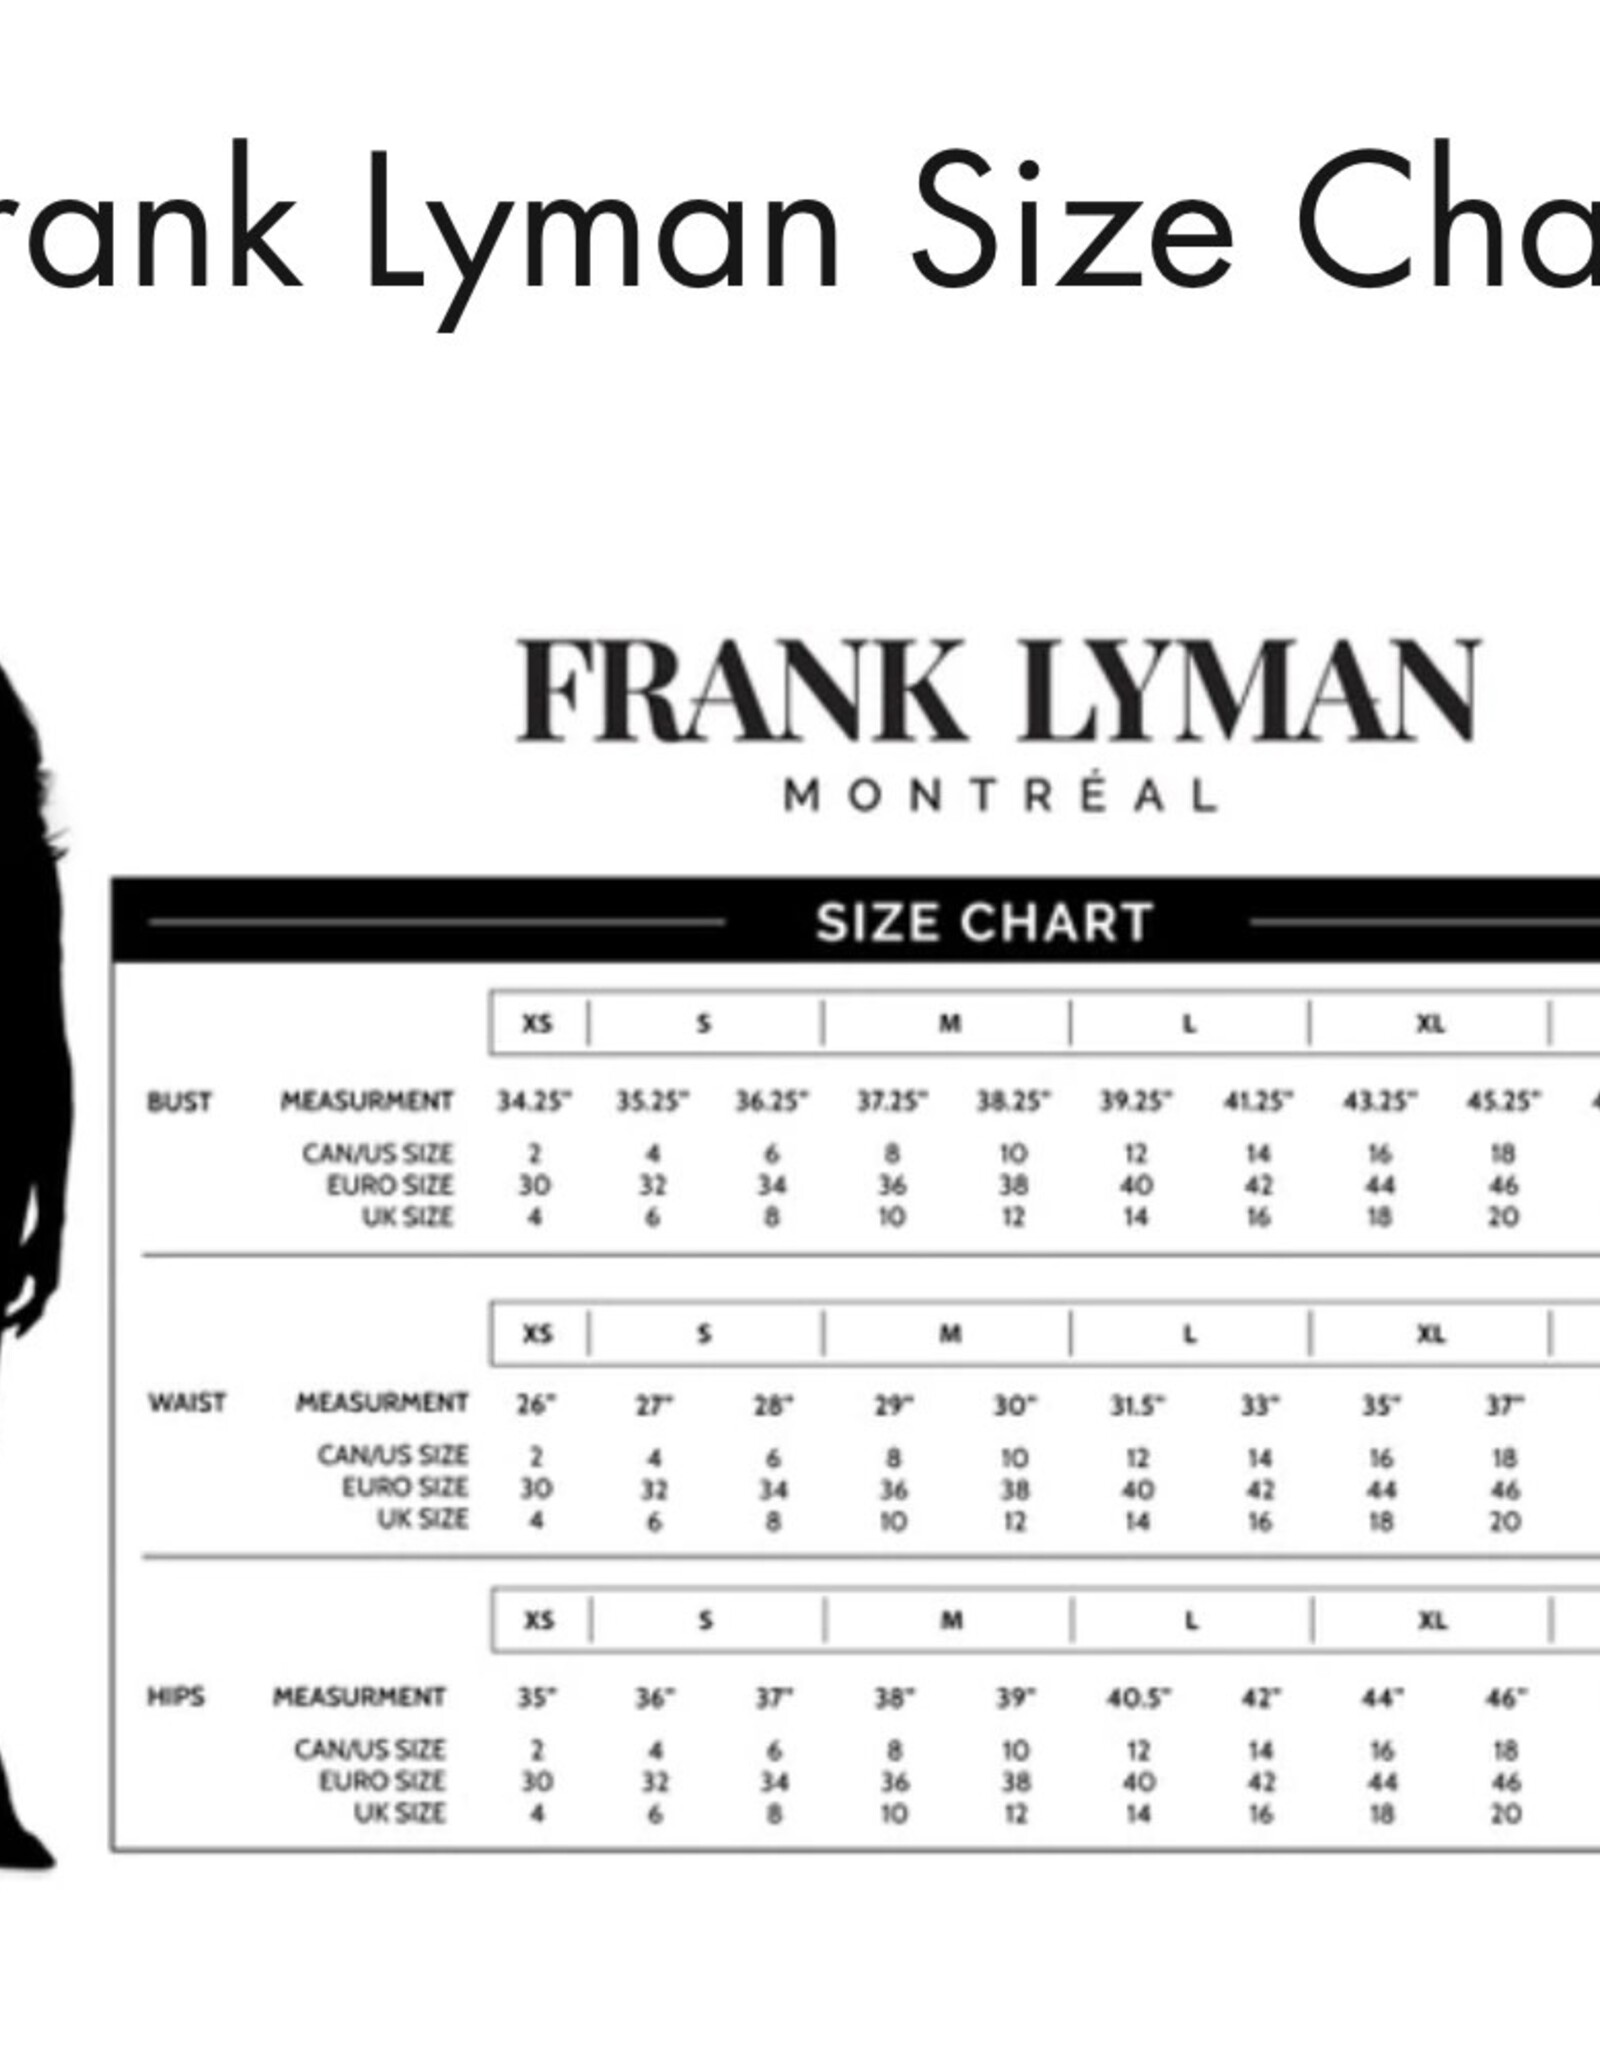 Frank Lyman Frank Lyman - Fitted Overlay Dress with Rhinestones